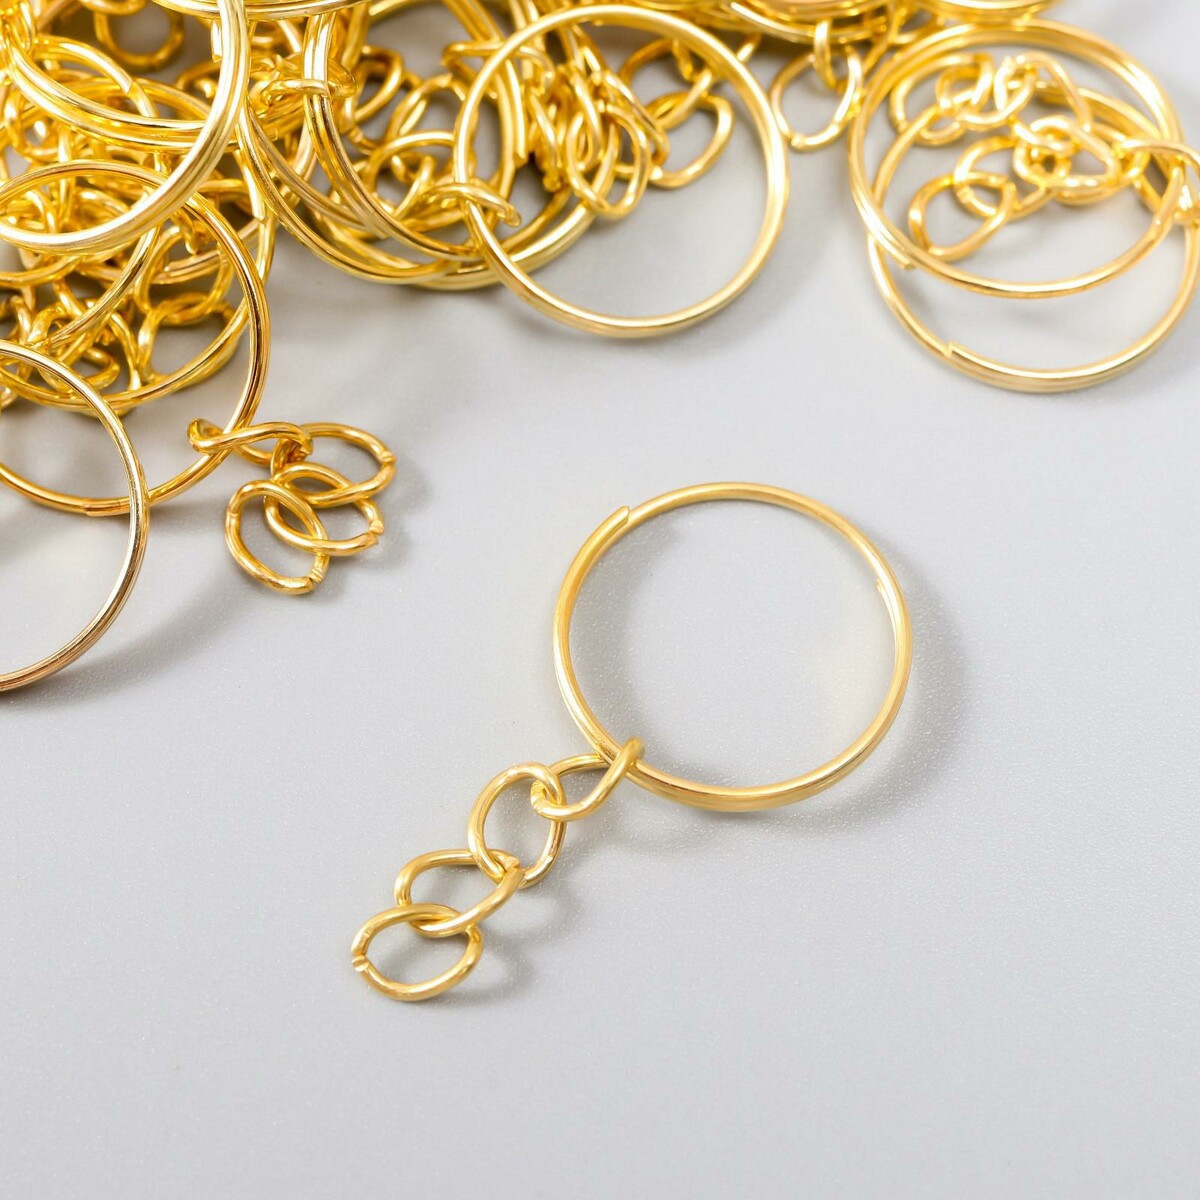 Основа для брелока кольцо металл с цепочкой золото 1,8х1,8 см набор 40 шт шкатулка металл под свечу квадратная металлик золото 8 5х8 5х4 5 см